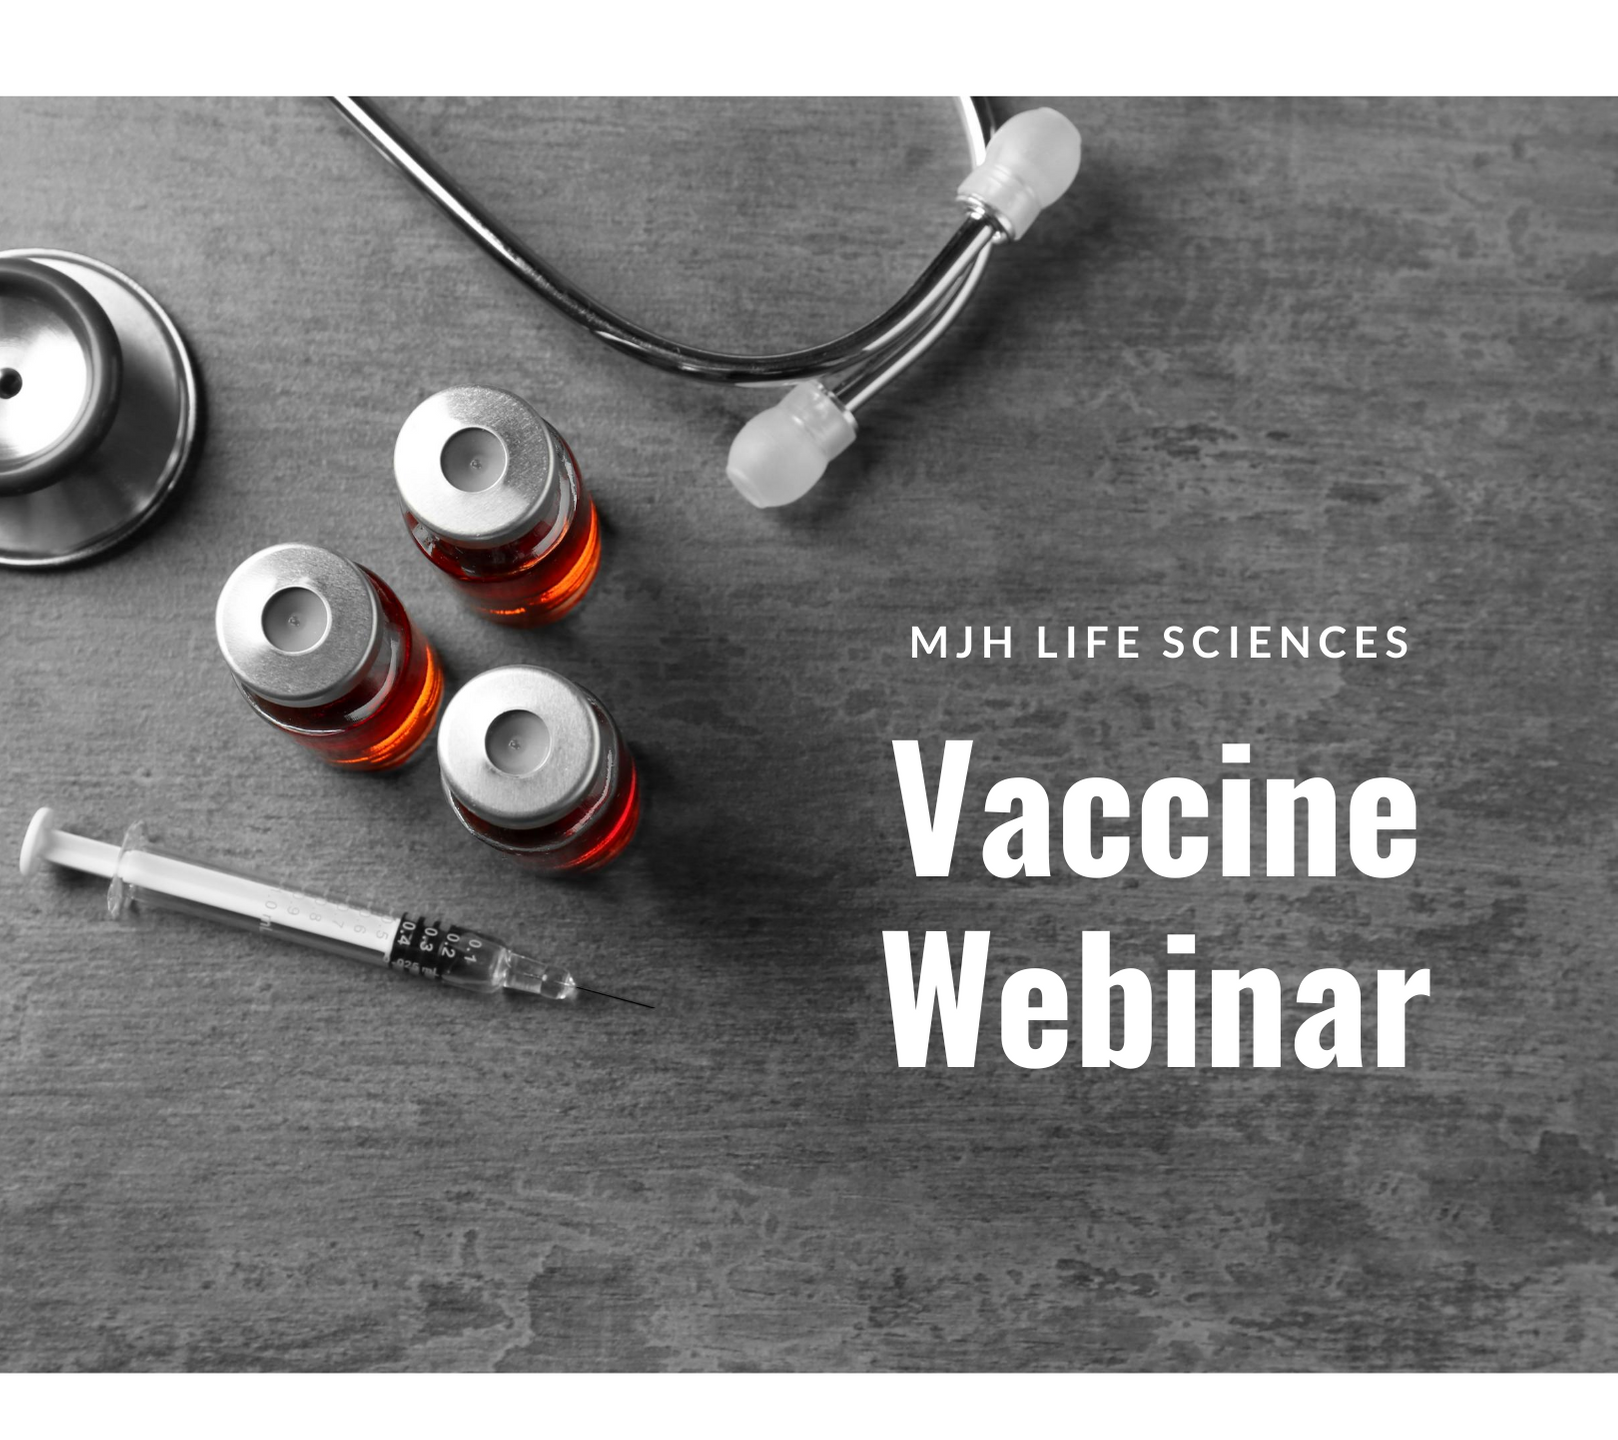 Free vaccine webinar